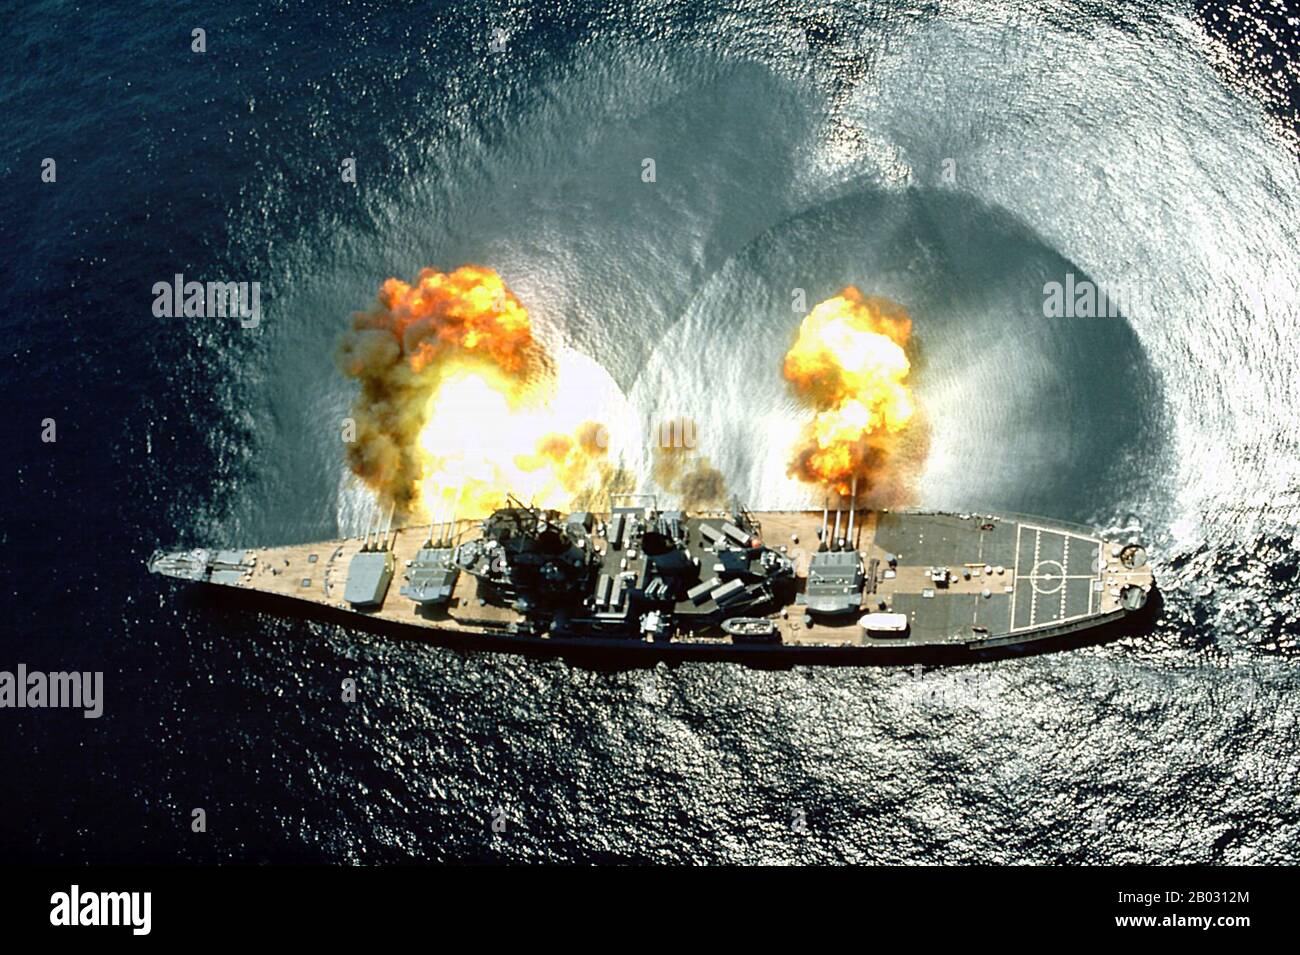 La USS Iowa (BB-61) è la nave principale della sua classe di corazzata e la quarta nella Marina degli Stati Uniti ad essere nominata in onore dello stato 29th. Durante la seconda guerra mondiale, ha portato il presidente Franklin D. Roosevelt attraverso l'Atlantico a Mers El Kébir, Algeria, sulla strada per un cruciale incontro del 1943 a Teheran con il primo ministro Winston Churchill della Gran Bretagna e Josef Stalin, leader dell'Unione Sovietica. Quando fu trasferito alla Pacific Fleet nel 1944, l'Iowa sgusò le teste di mare a Kwajalein e Eniwetok prima degli sbarchi anfibi alleati e dei vettori aerei schermati che operavano nelle Isole Marshall. S Foto Stock